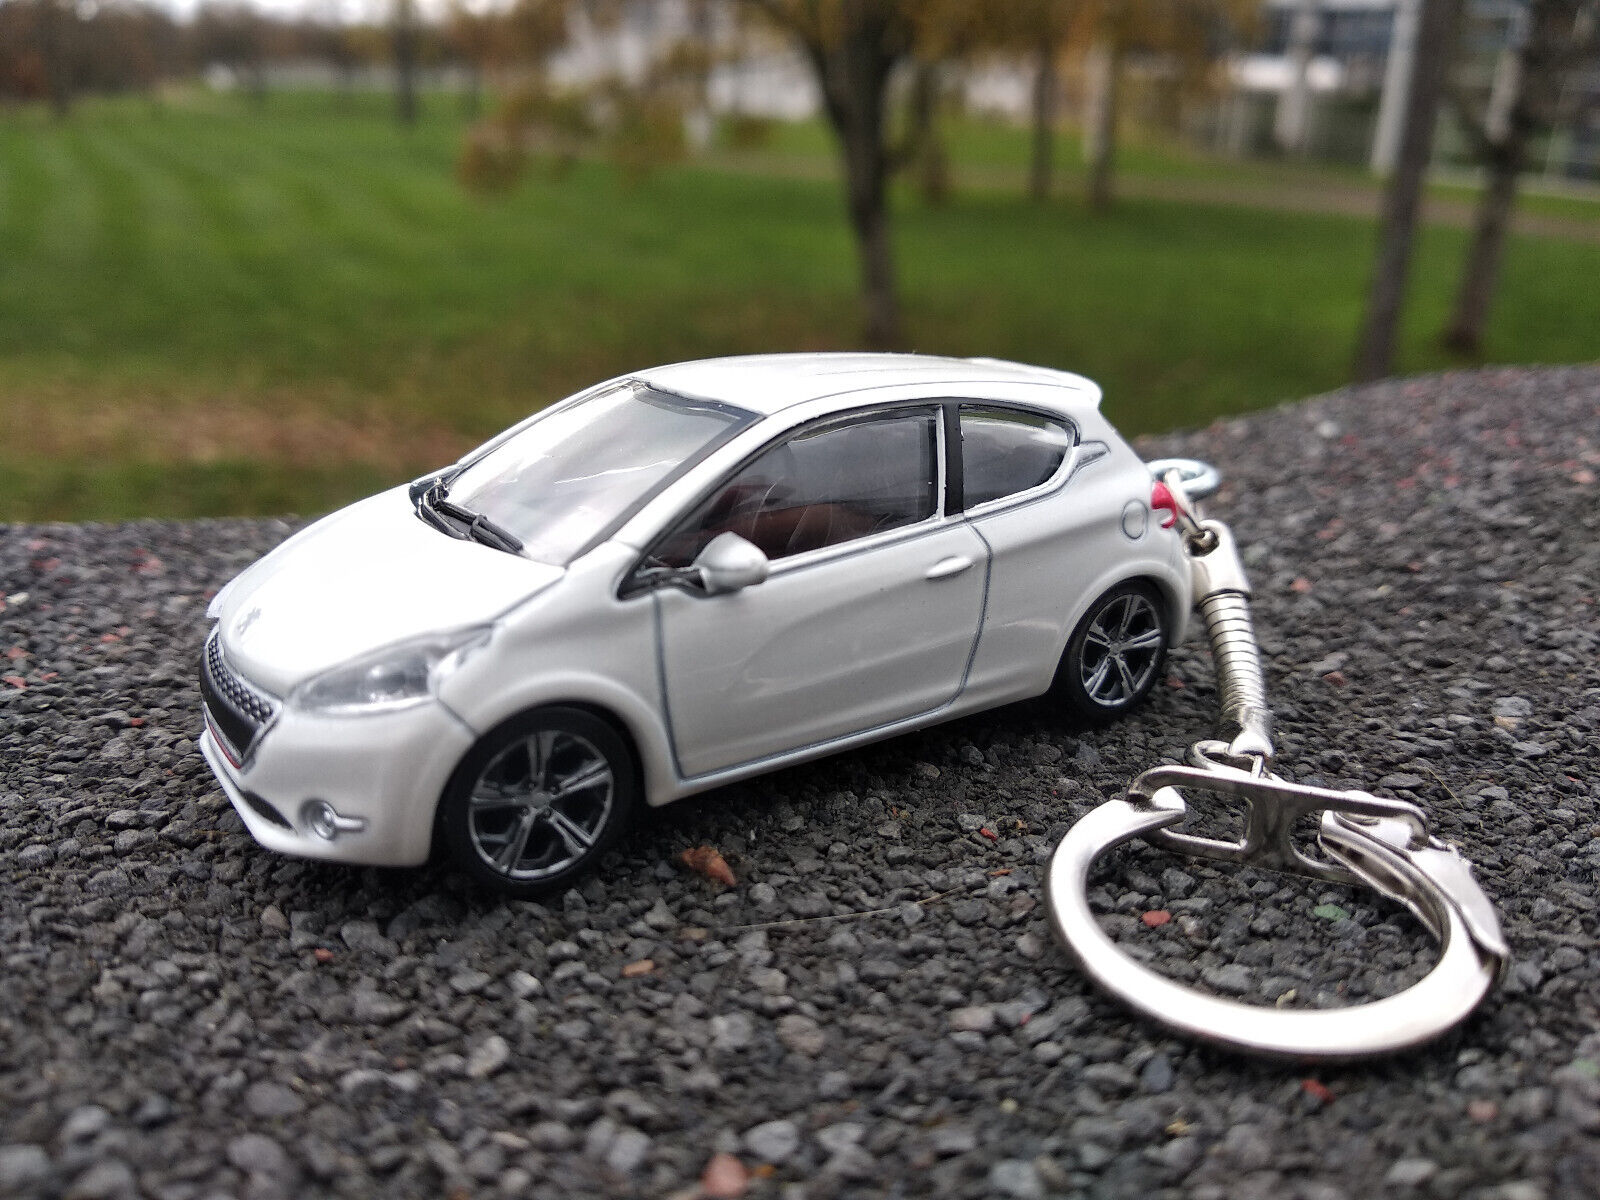 Porte clé Peugeot 208 GTI blanche, en métal , idée cadeau sympa • Ateepique